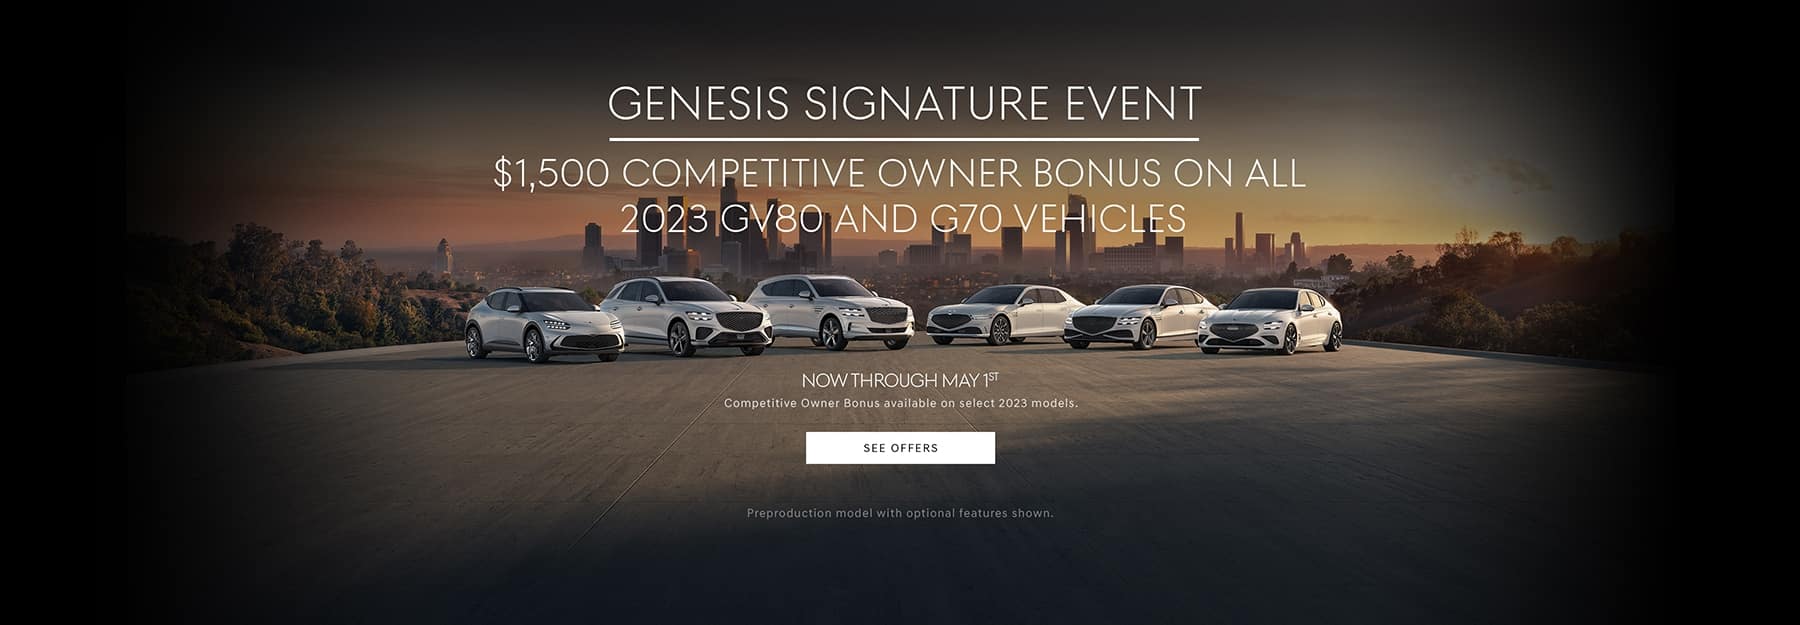 Genesis Signature Sales Event